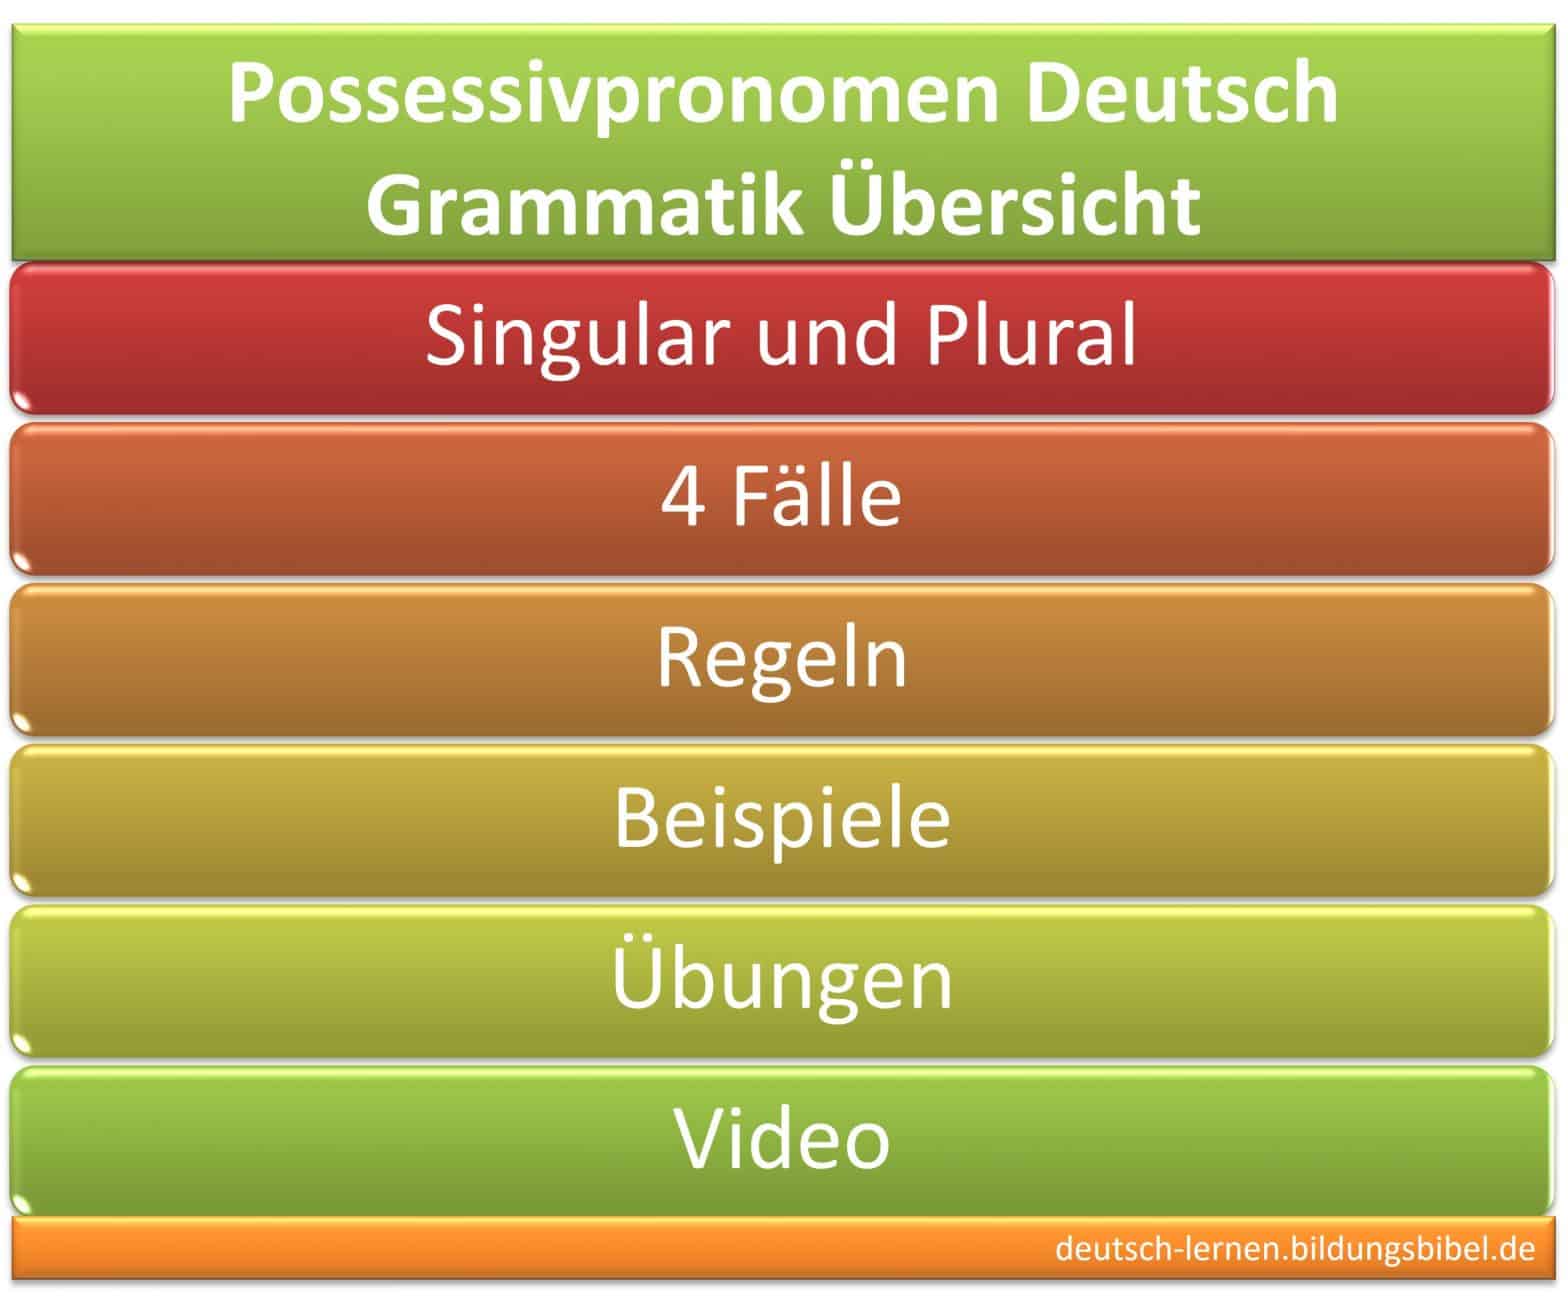 Possessivpronomen, besitzanzeigende Fürwörter, Regel, Beispiele, vier Fälle, Arbeitsblätter, Video, Übungen, Deutsch Grammatik lernen.